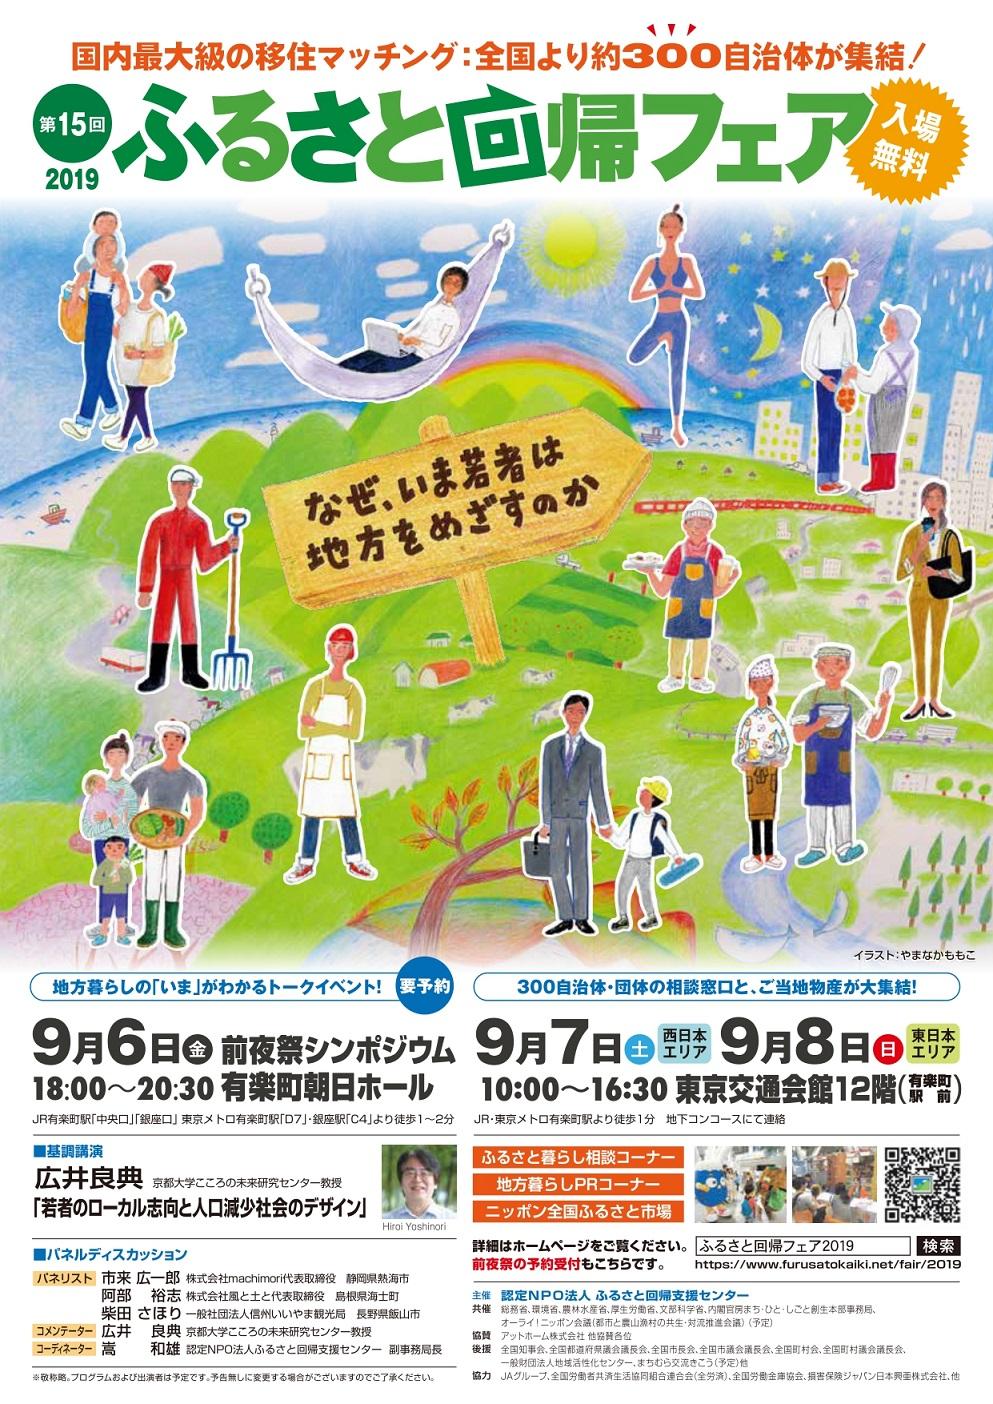 2019年9月7日8日に東京都で行われた、ふるさと回帰フェアとその前日の6日に行われた前夜祭シンポジウムの概要が書かれたチラシの画像